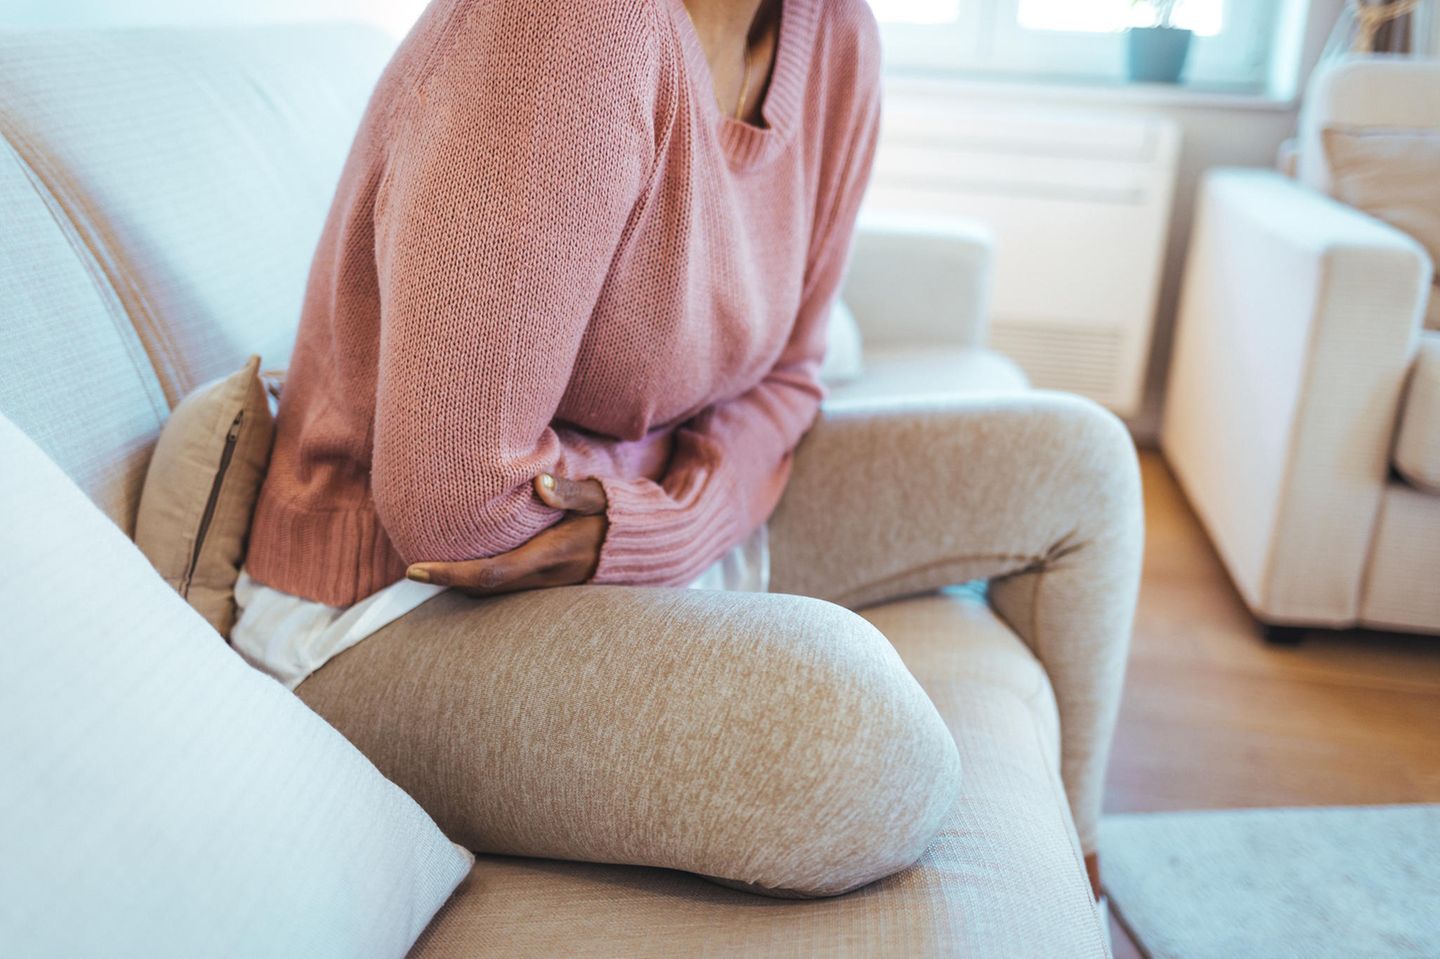 Eisprungsymptome: Frau in rosa Pulli und Leggings hält sich den Unterleib